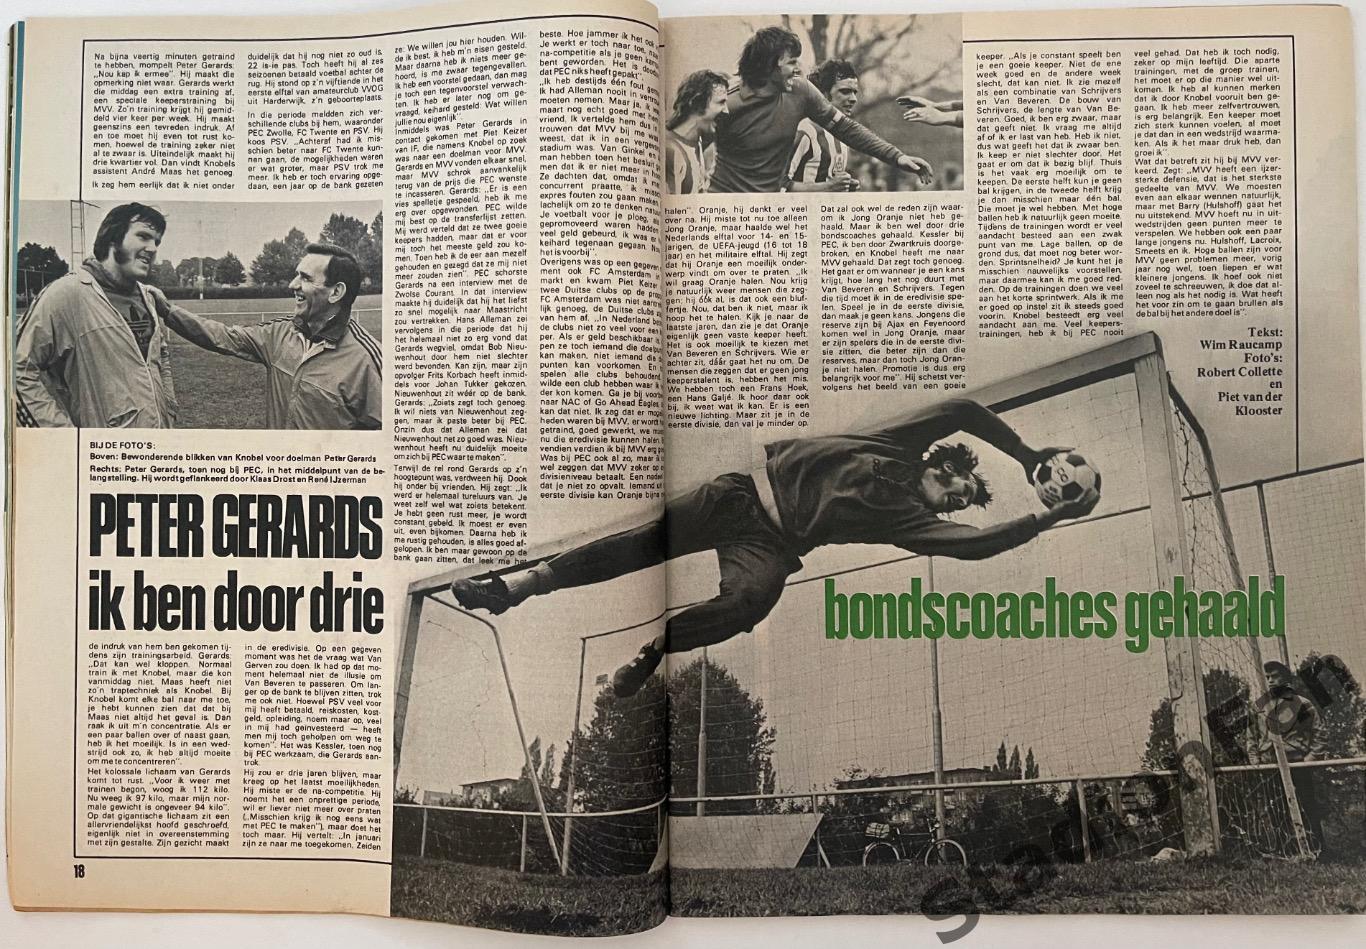 Журнал Voetbal nr.38 - 1977 год. 4